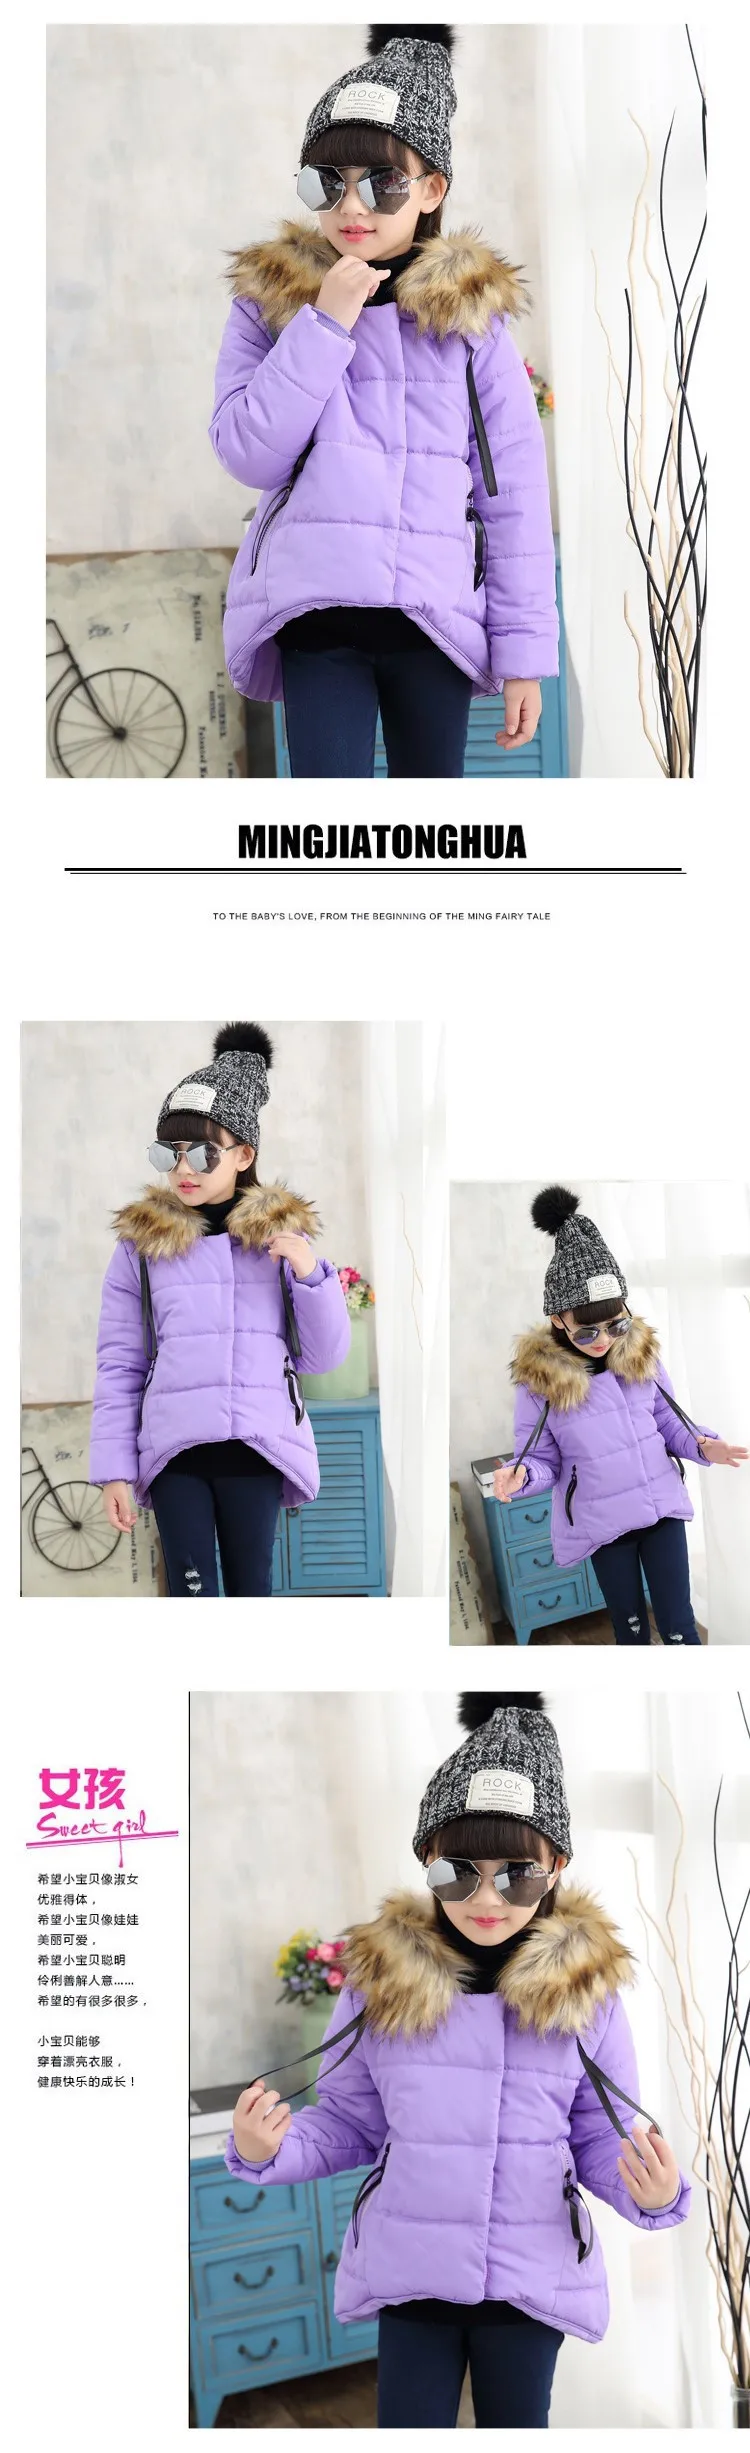 Новые зимние куртки для девочек детские пальто с меховым воротником Manteau Doudoune Enfant Fille куртки для девочек 6WTT033